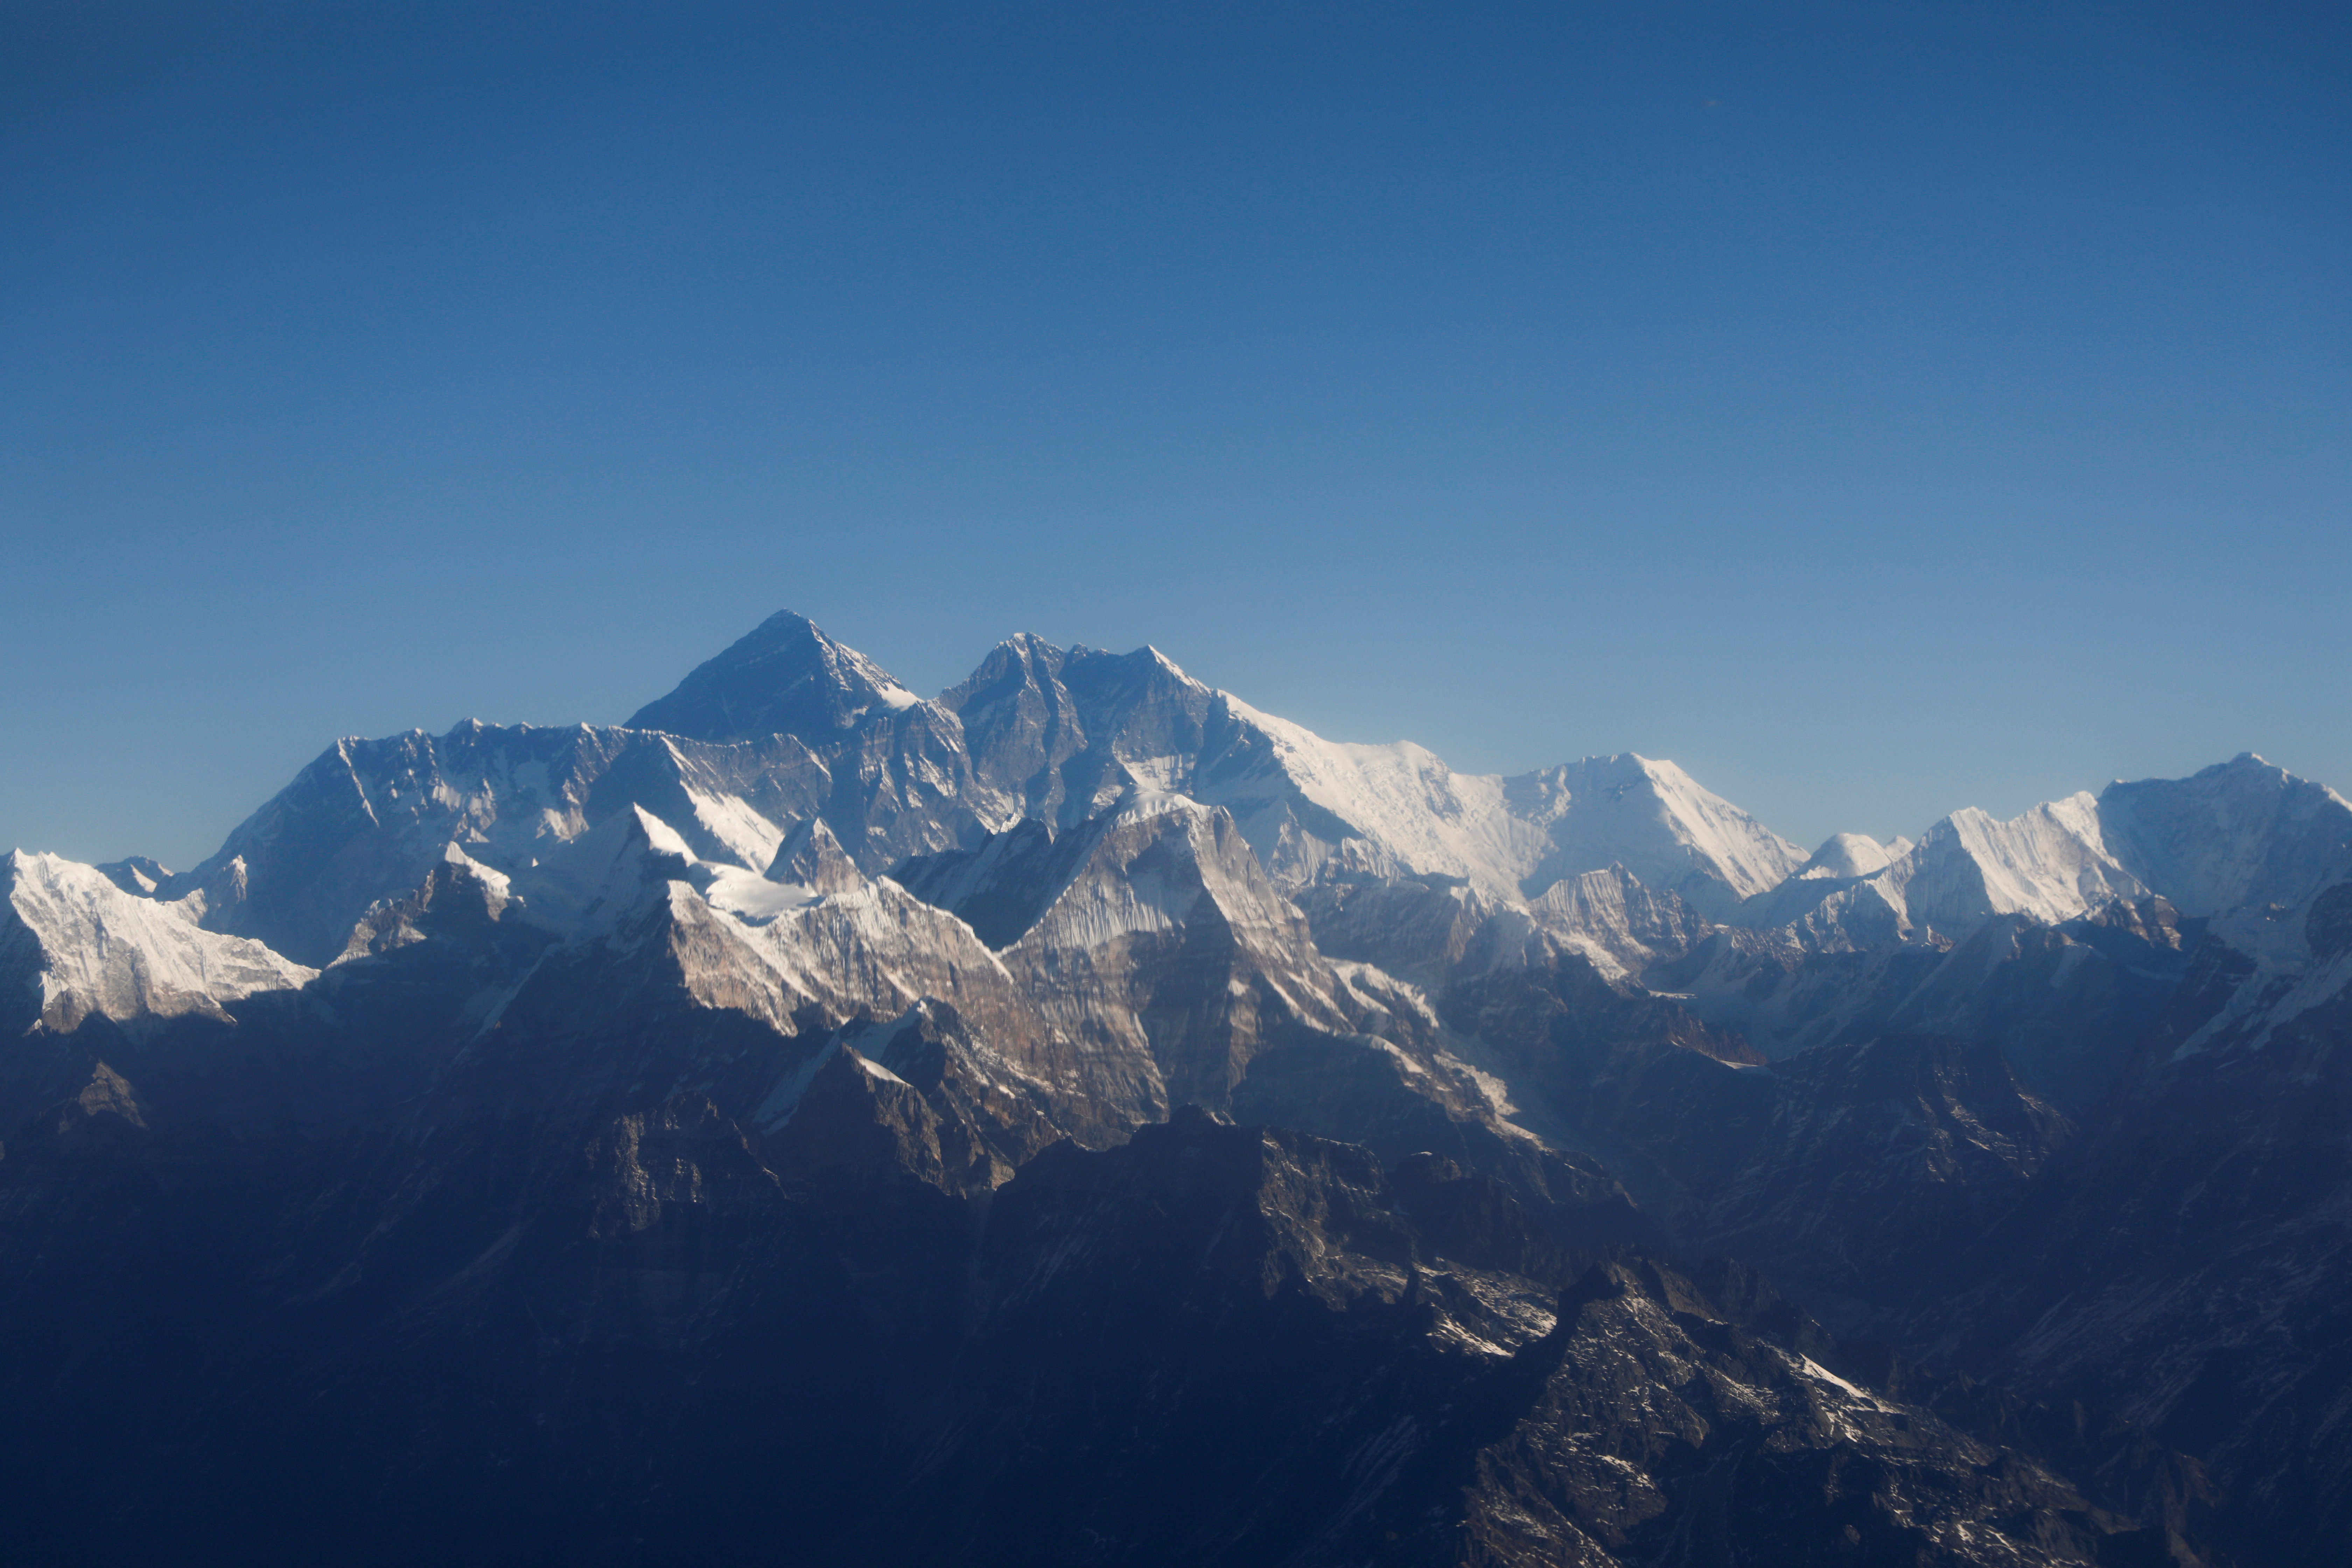 Vista del Everest en una imagen de archivo.